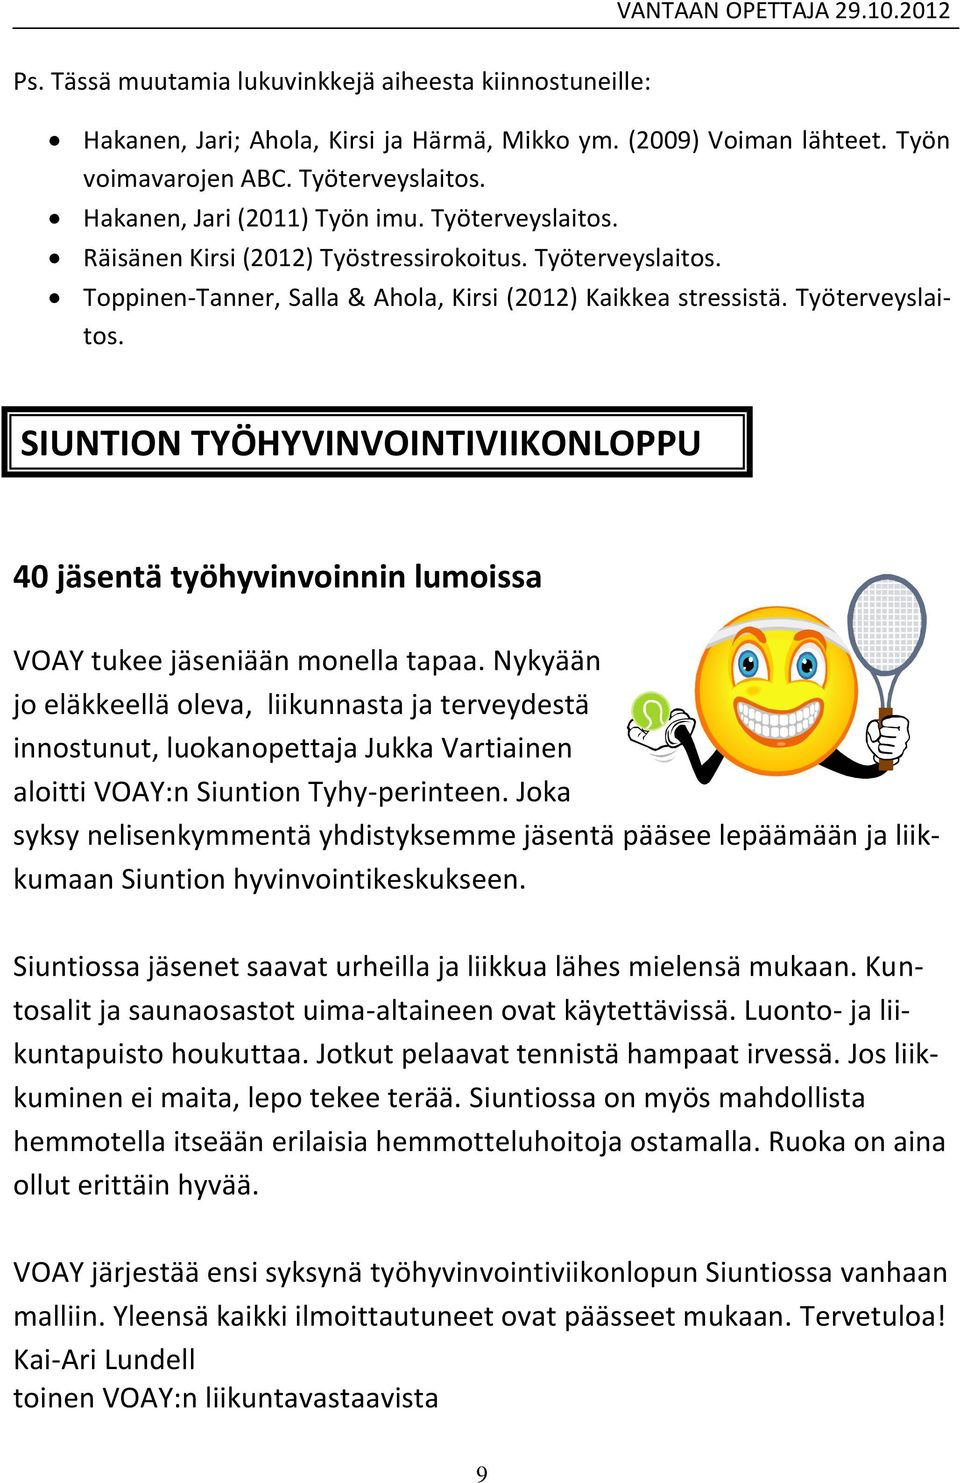 Nykyään jo eläkkeellä oleva, liikunnasta ja terveydestä innostunut, luokanopettaja Jukka Vartiainen aloitti VOAY:n Siuntion Tyhy-perinteen.